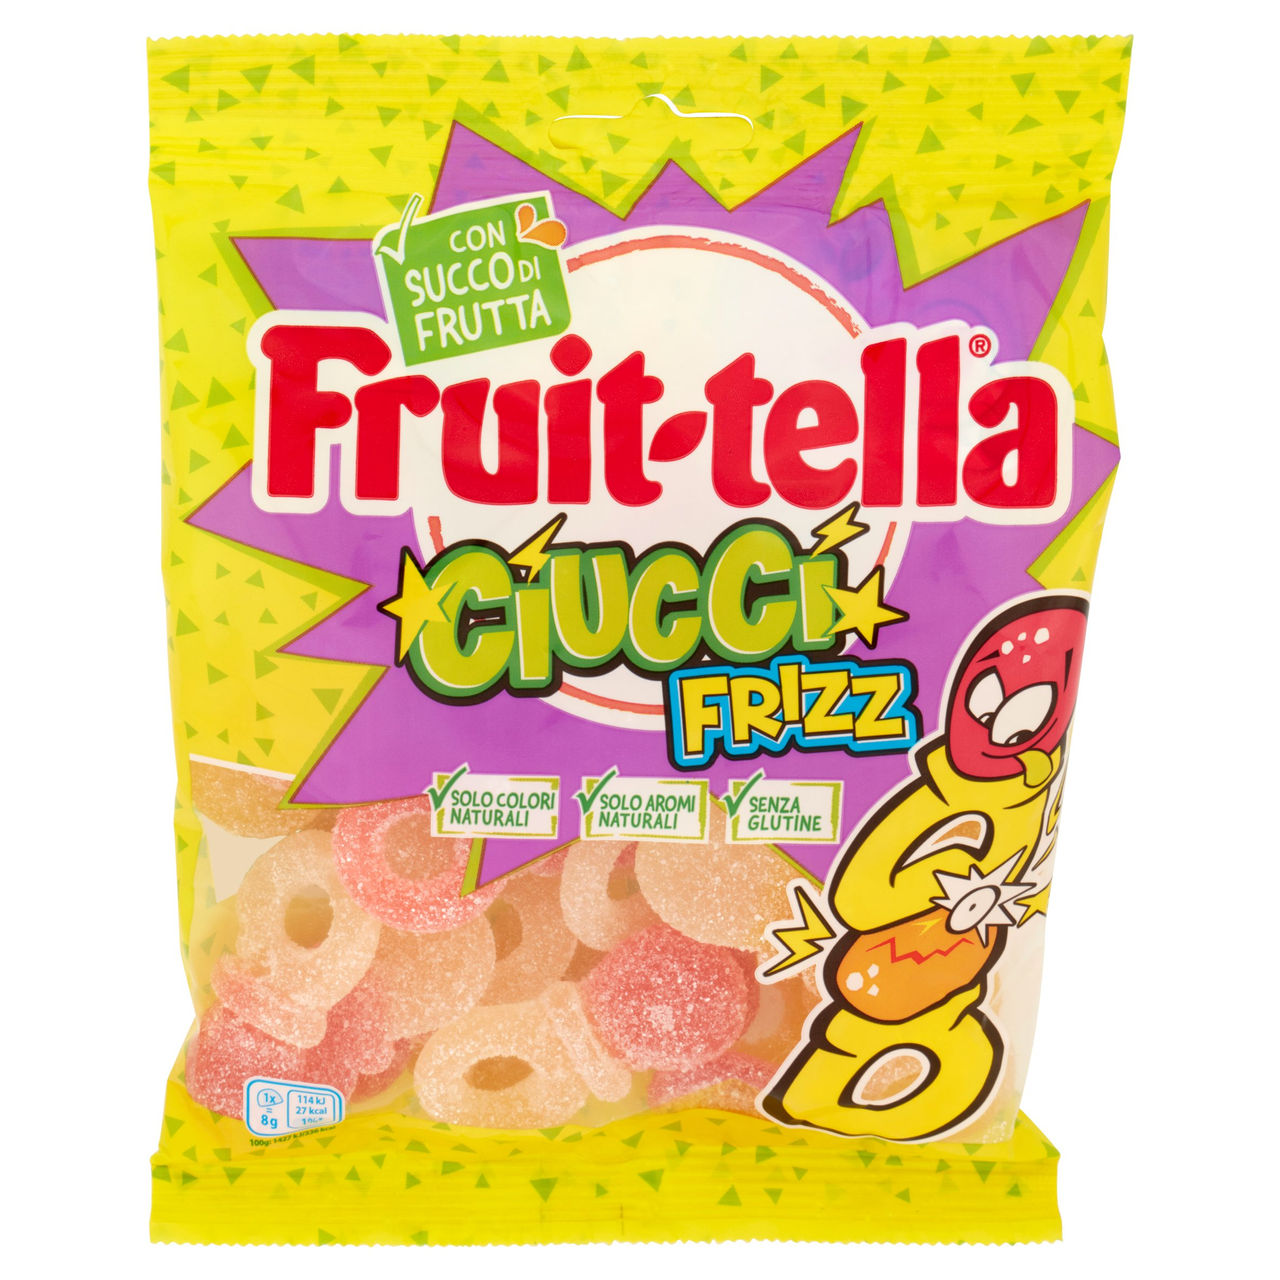 Fruit-tella Ciucci Frizz 175 g in vendita online